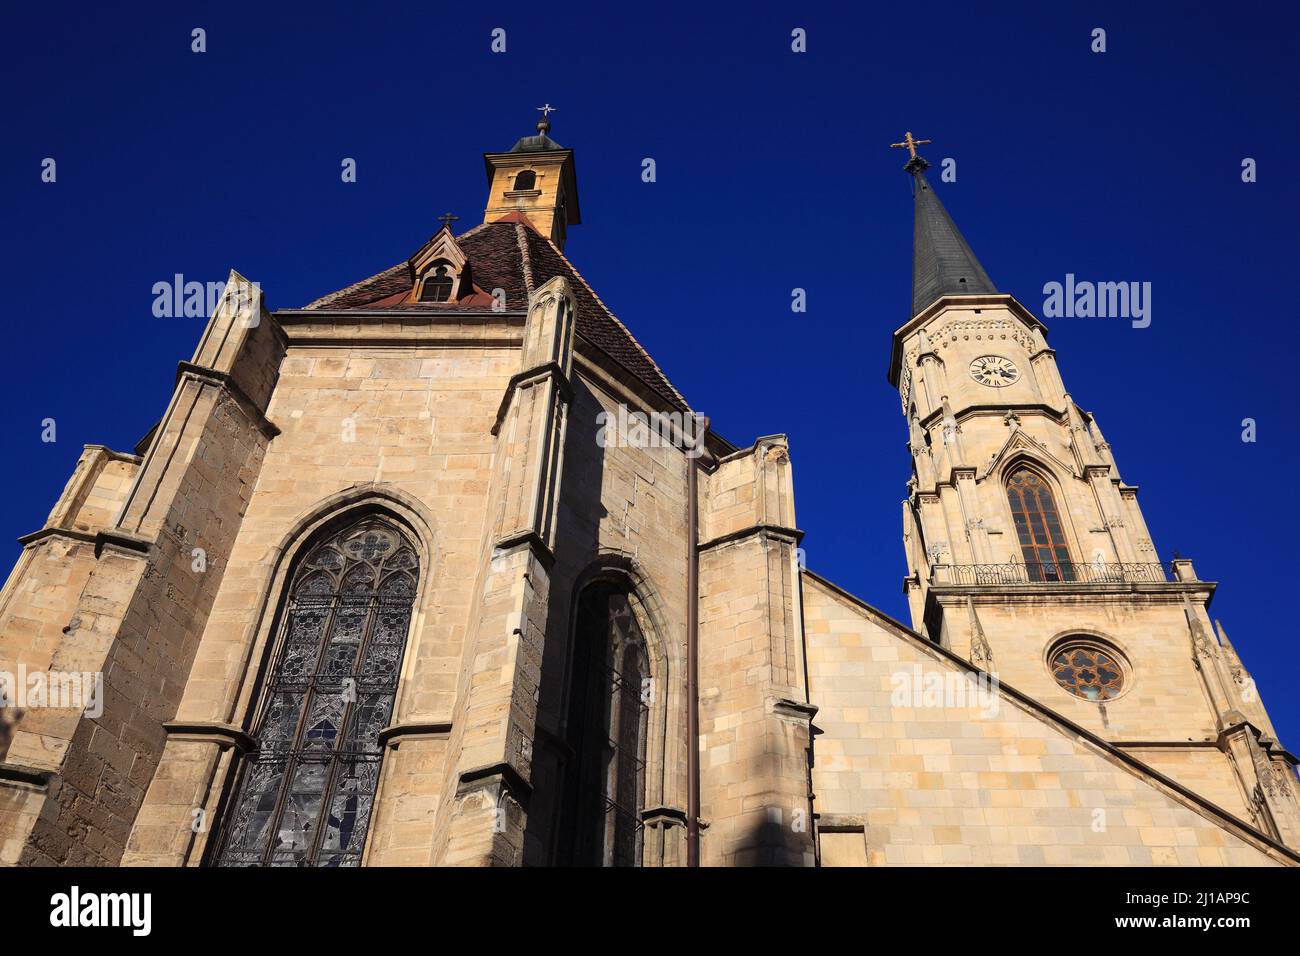 Die Klausenburger Michaelskirche in Cluj-Napoca, deutsch Klausenburg, ist das bedeutendste Beispiel einer gotischen Hallenkirche in Siebenbürgen, Rumä Banque D'Images